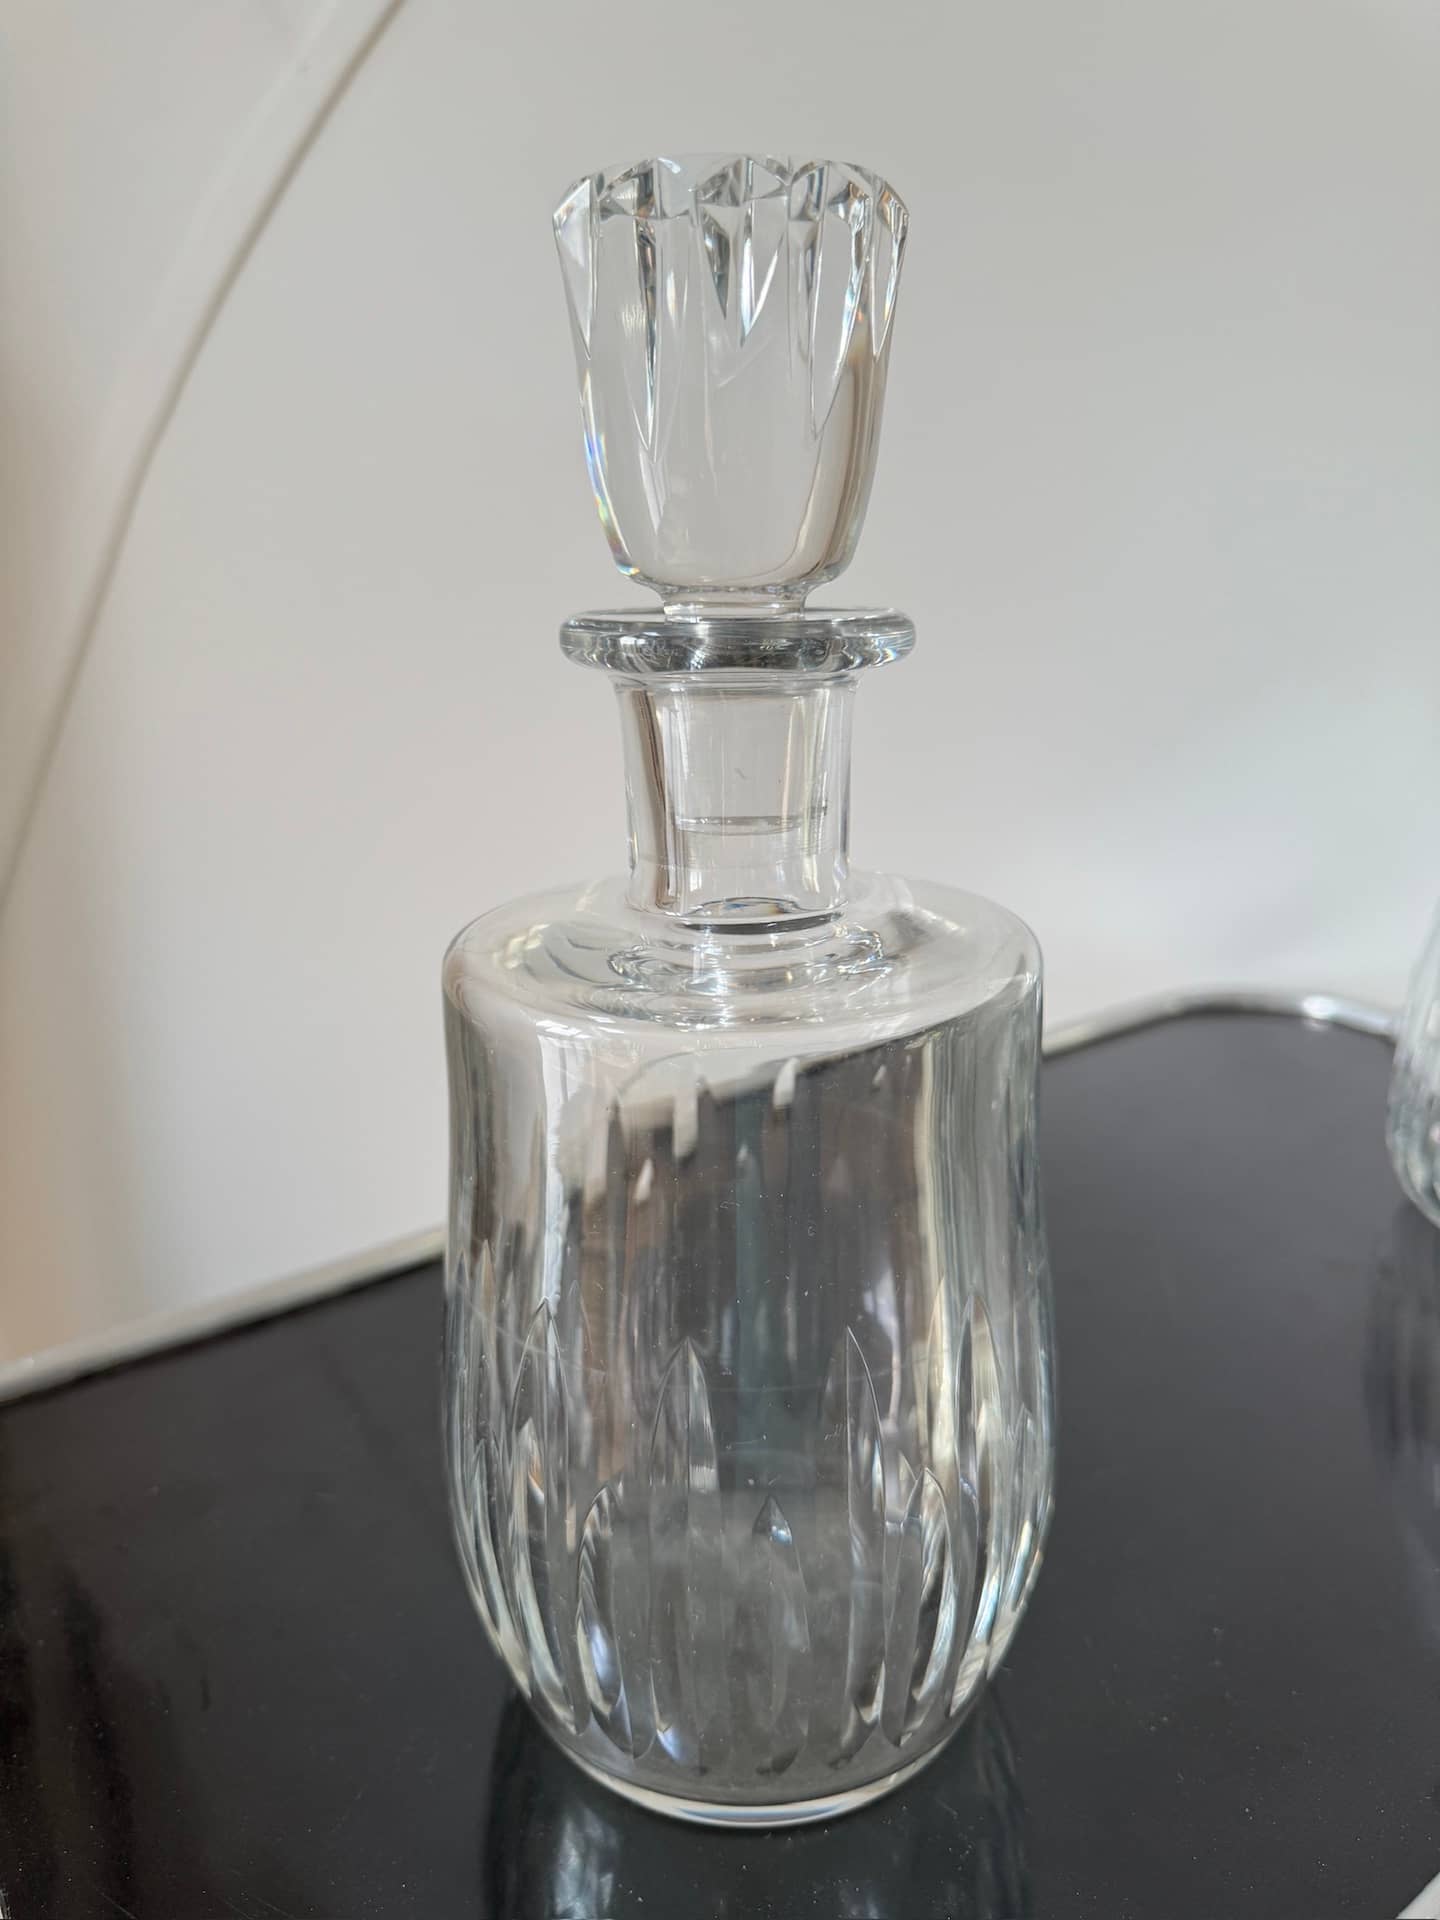 4 service verres baccarat anciens cristal